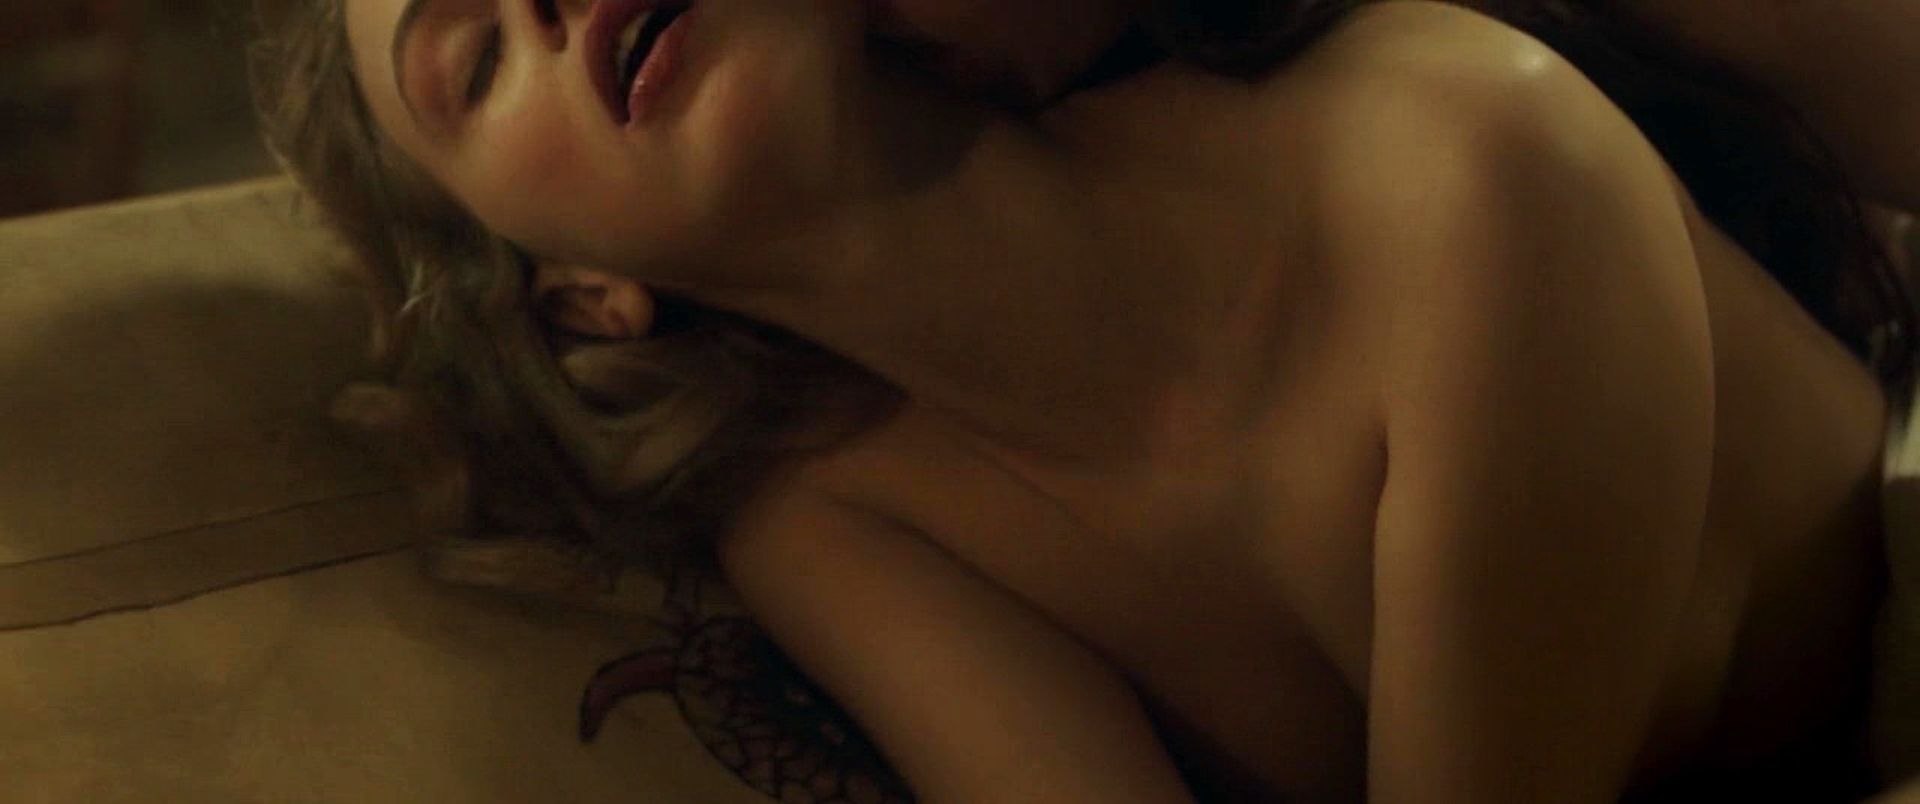 Малин Буська nude pics.